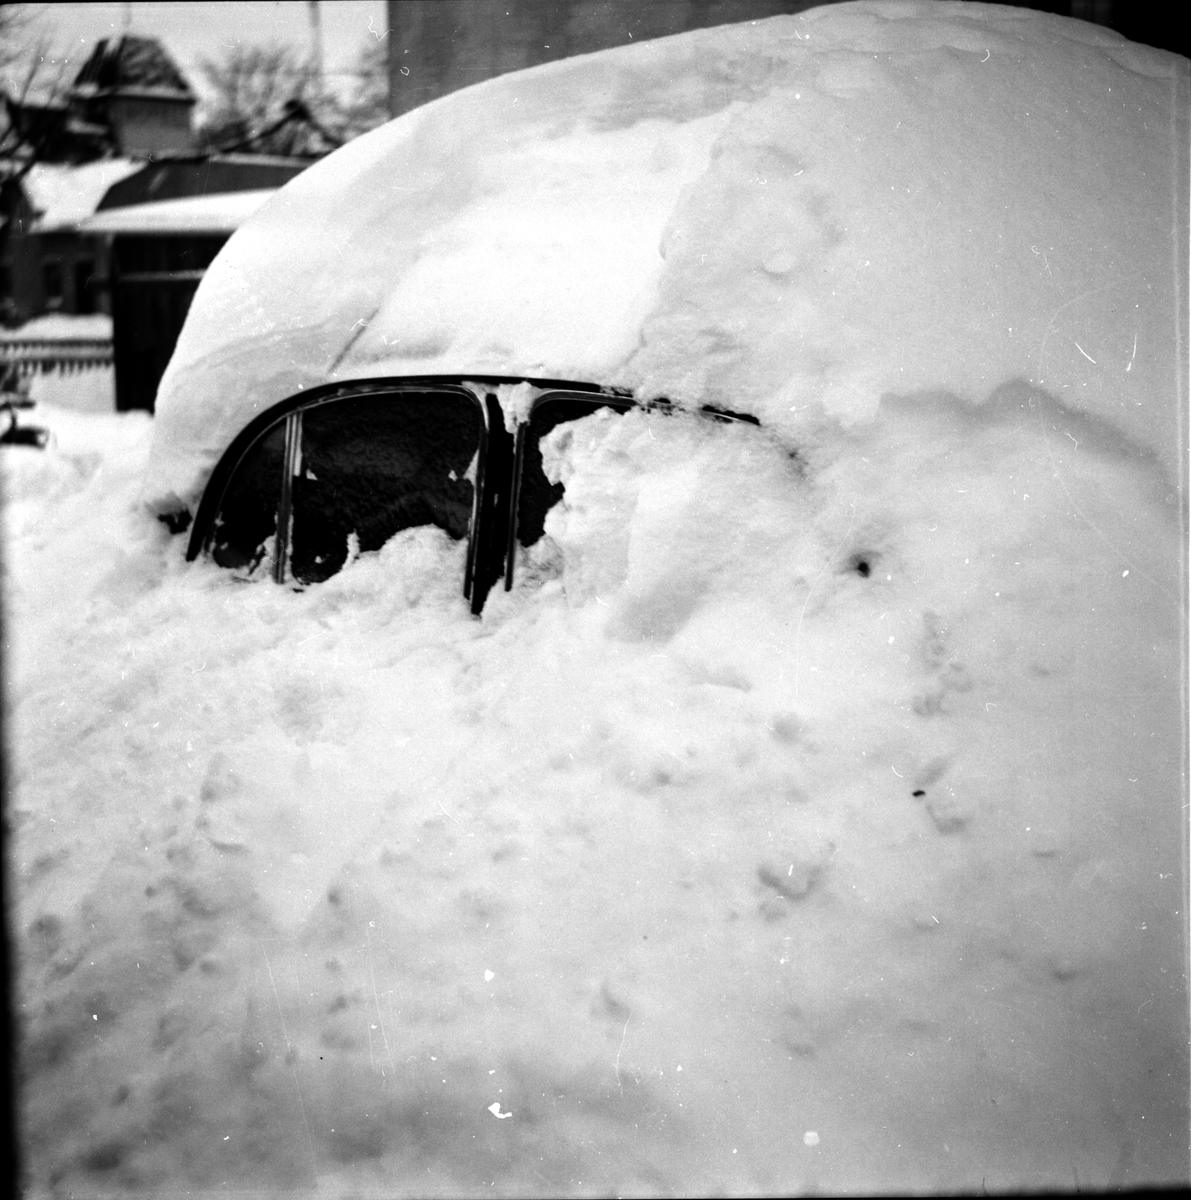 Snöbilder,
Ovädret,
1955
